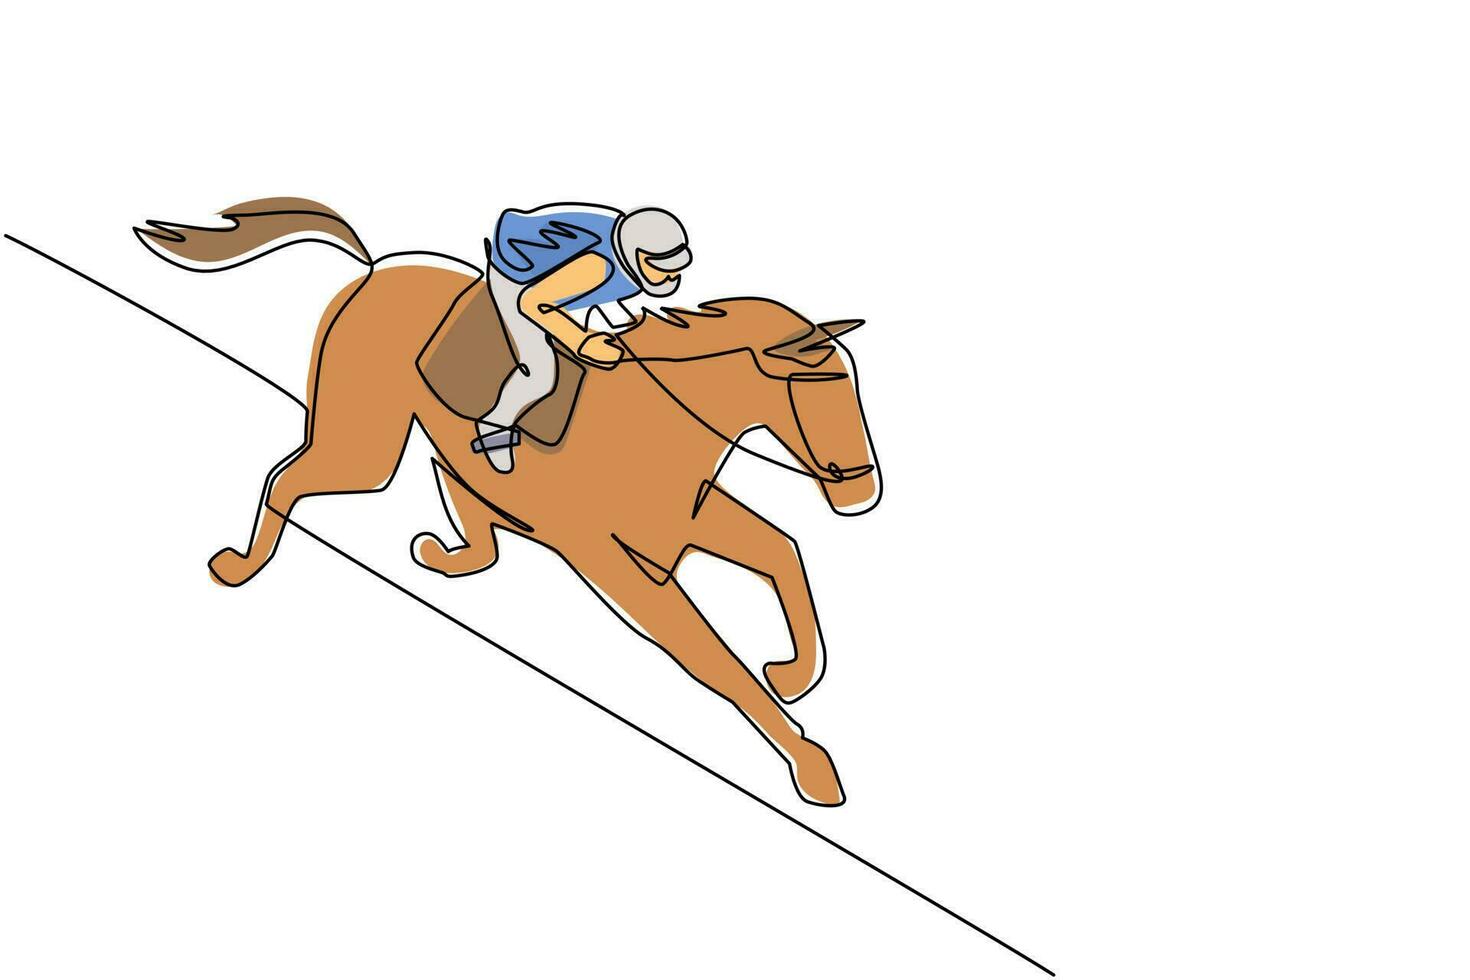 enda kontinuerlig linjeteckning ung jockey på häst. tävlingshäst med jockey. mästare. hästridning. hästsport. jockeyridning hopphäst. en rad rita grafisk design vektorillustration vektor